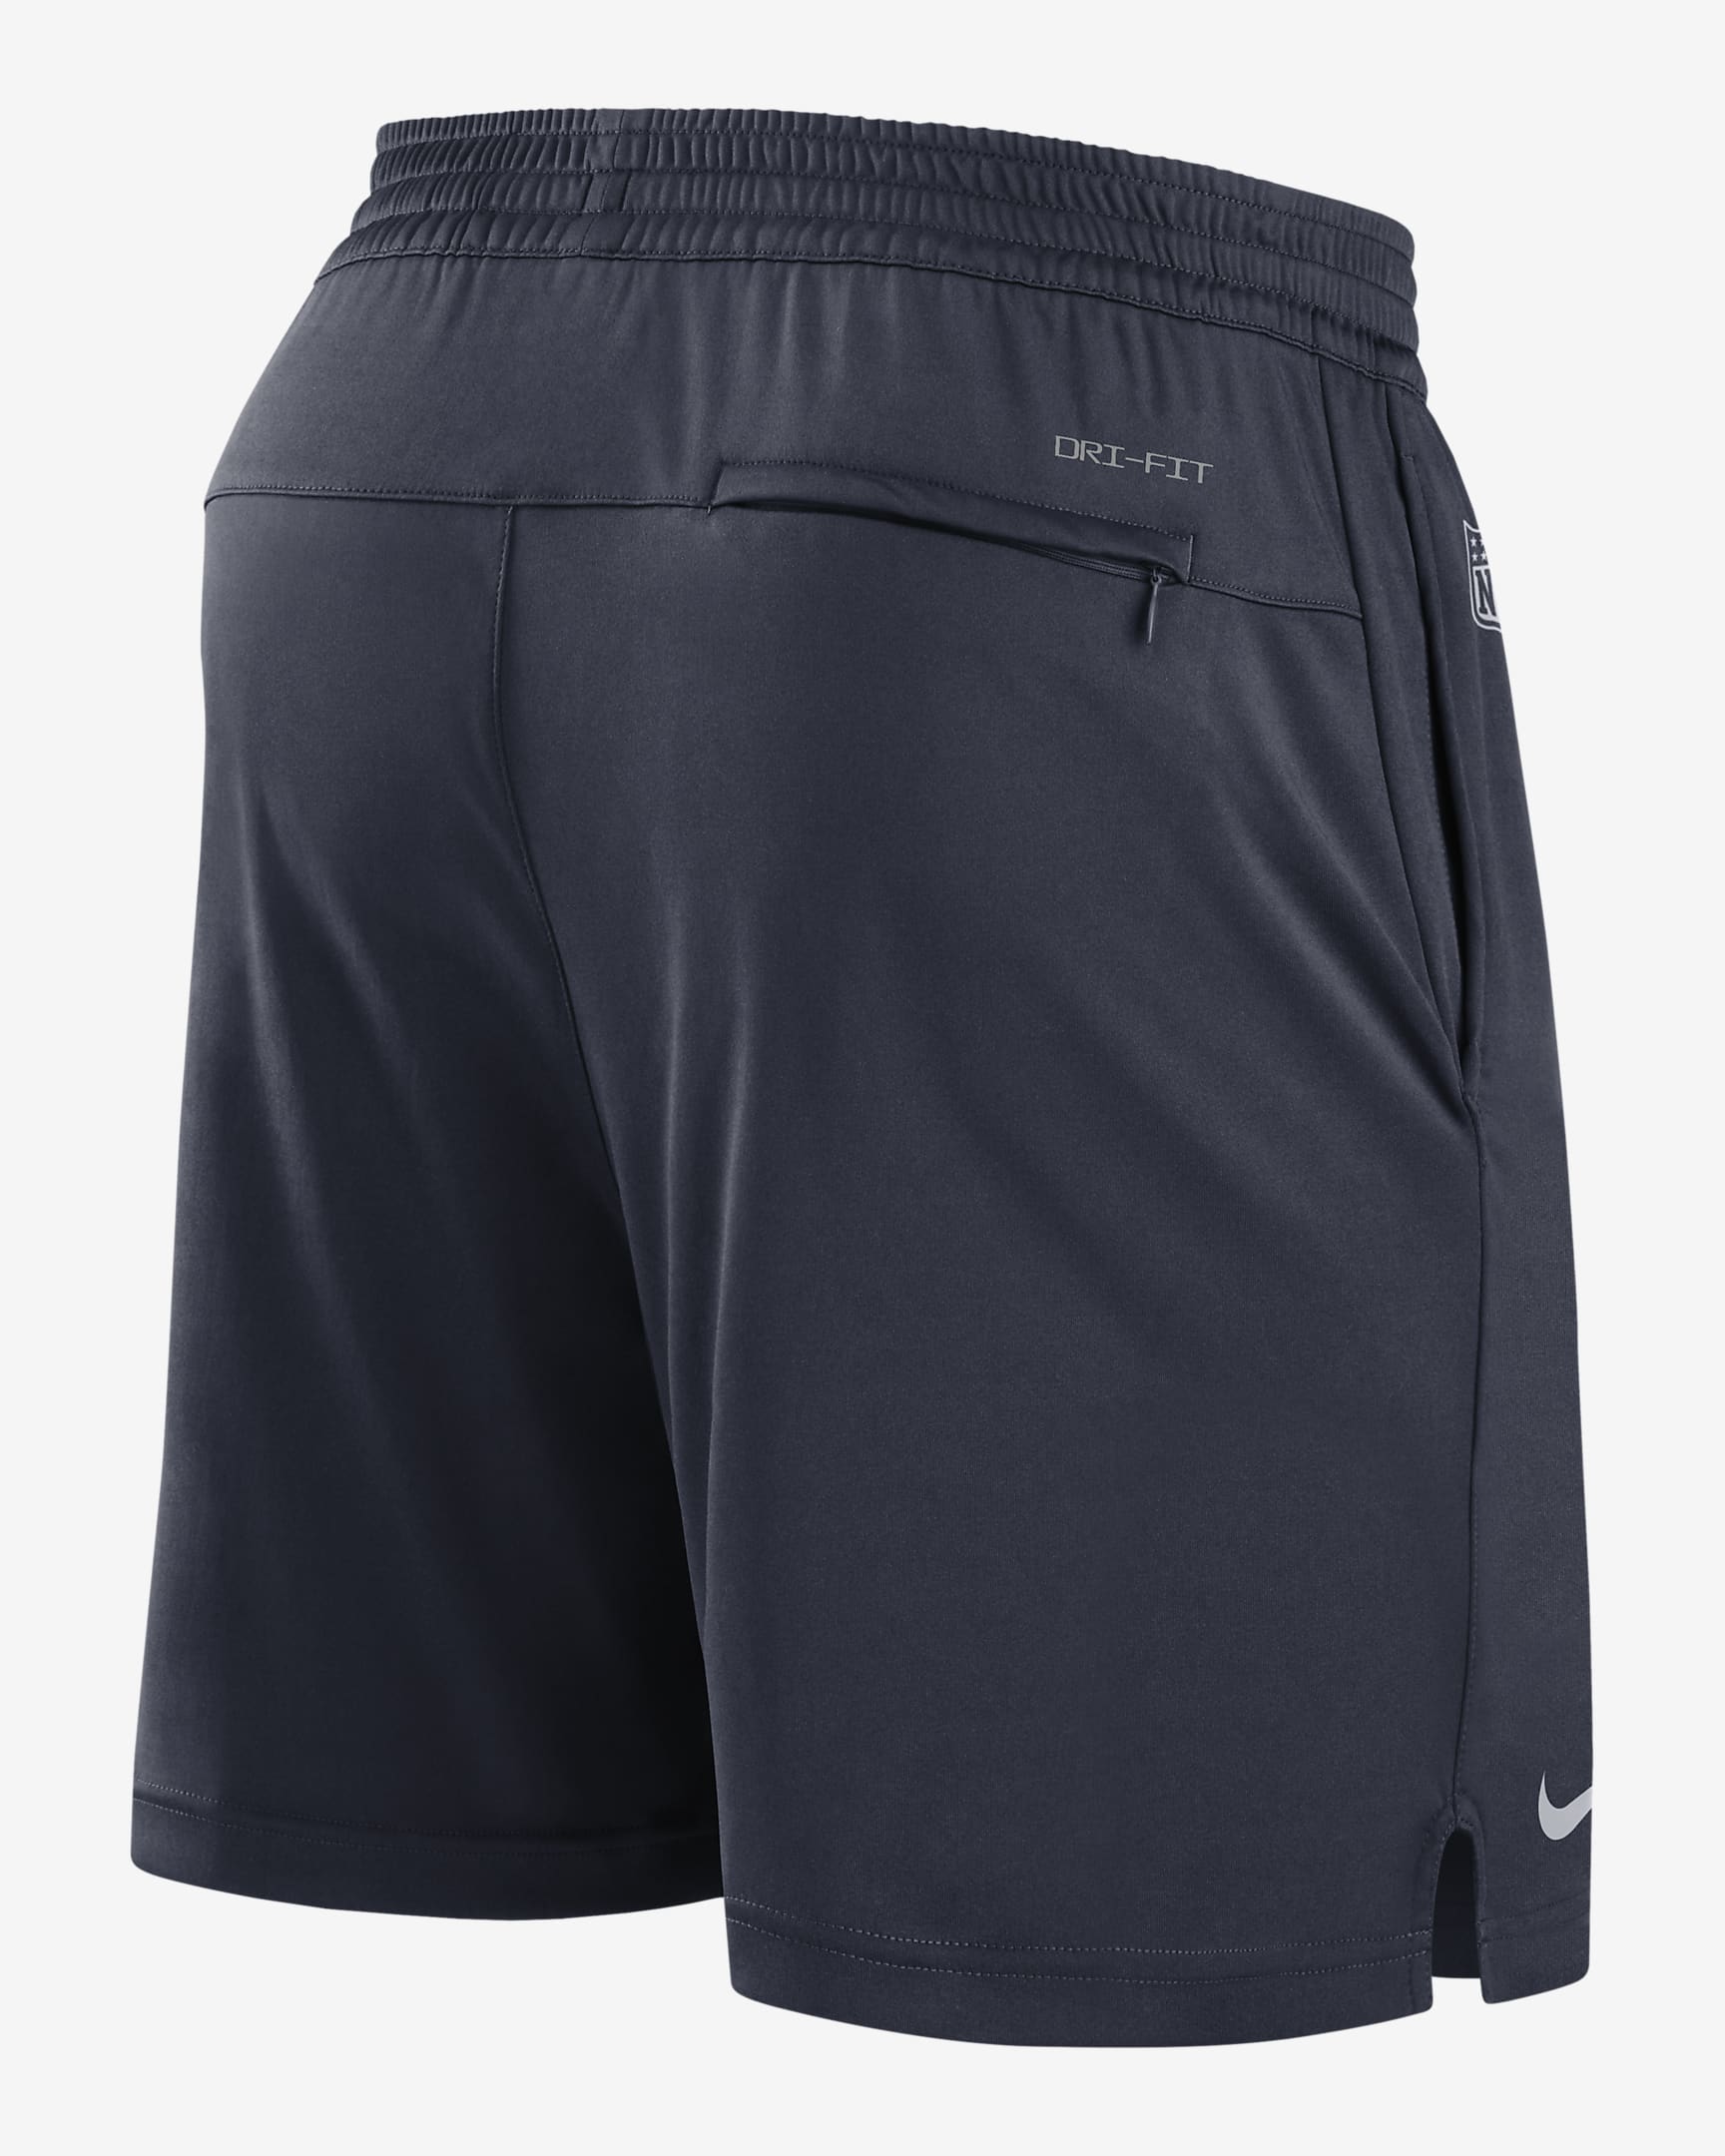 Shorts para hombre Nike Dri-FIT Sideline (NFL Houston Texans). Nike.com